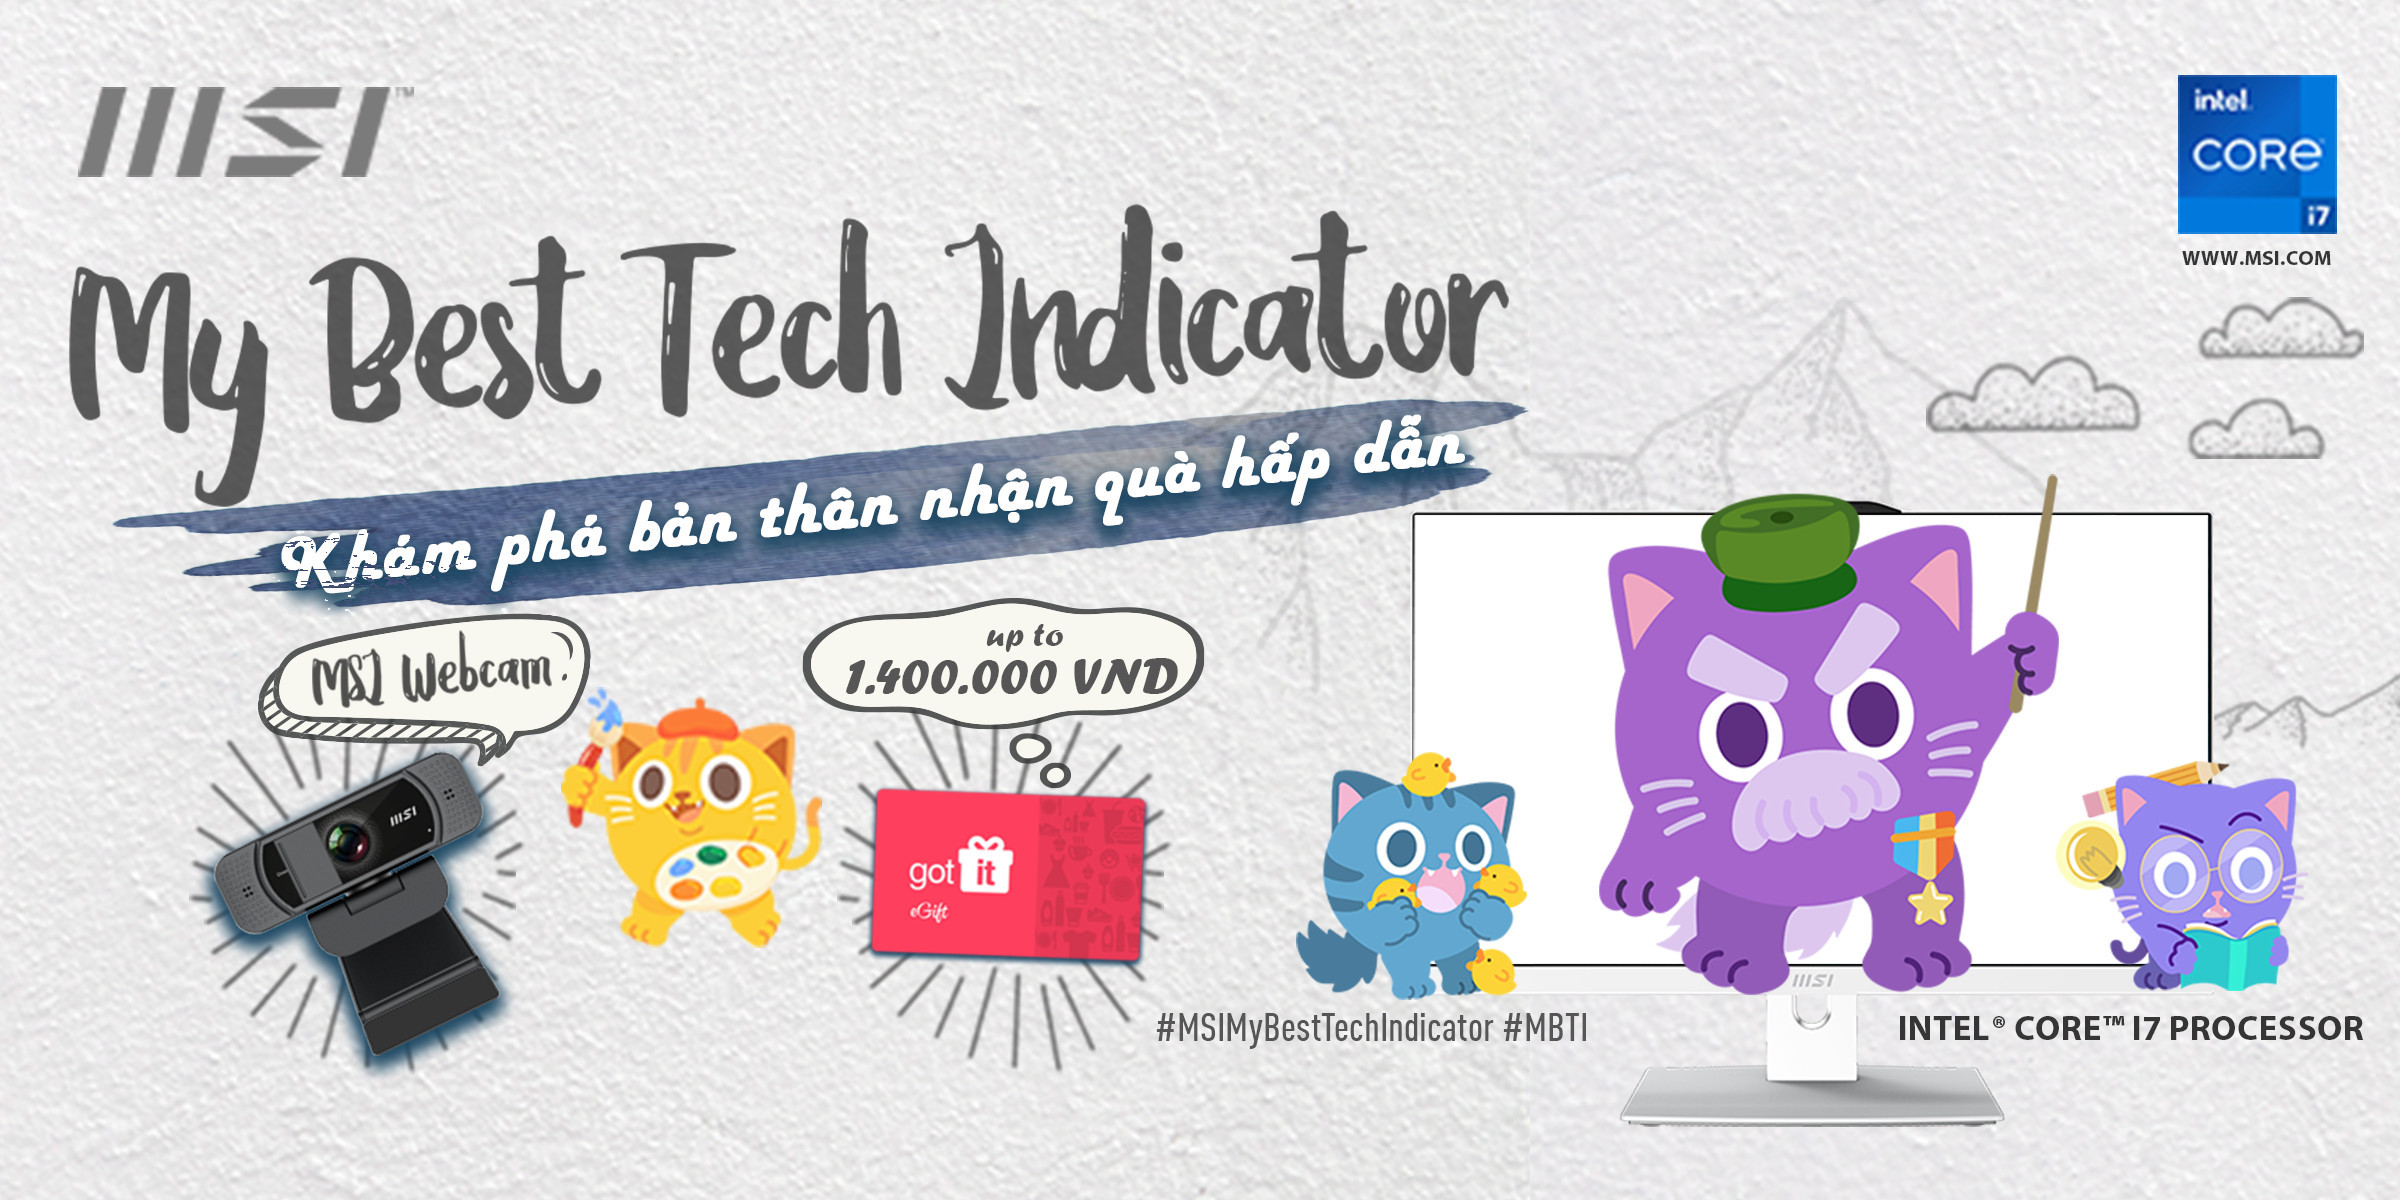 My Best Tech Indicator - Khám phá bản thân nhận quà hấp dẫn